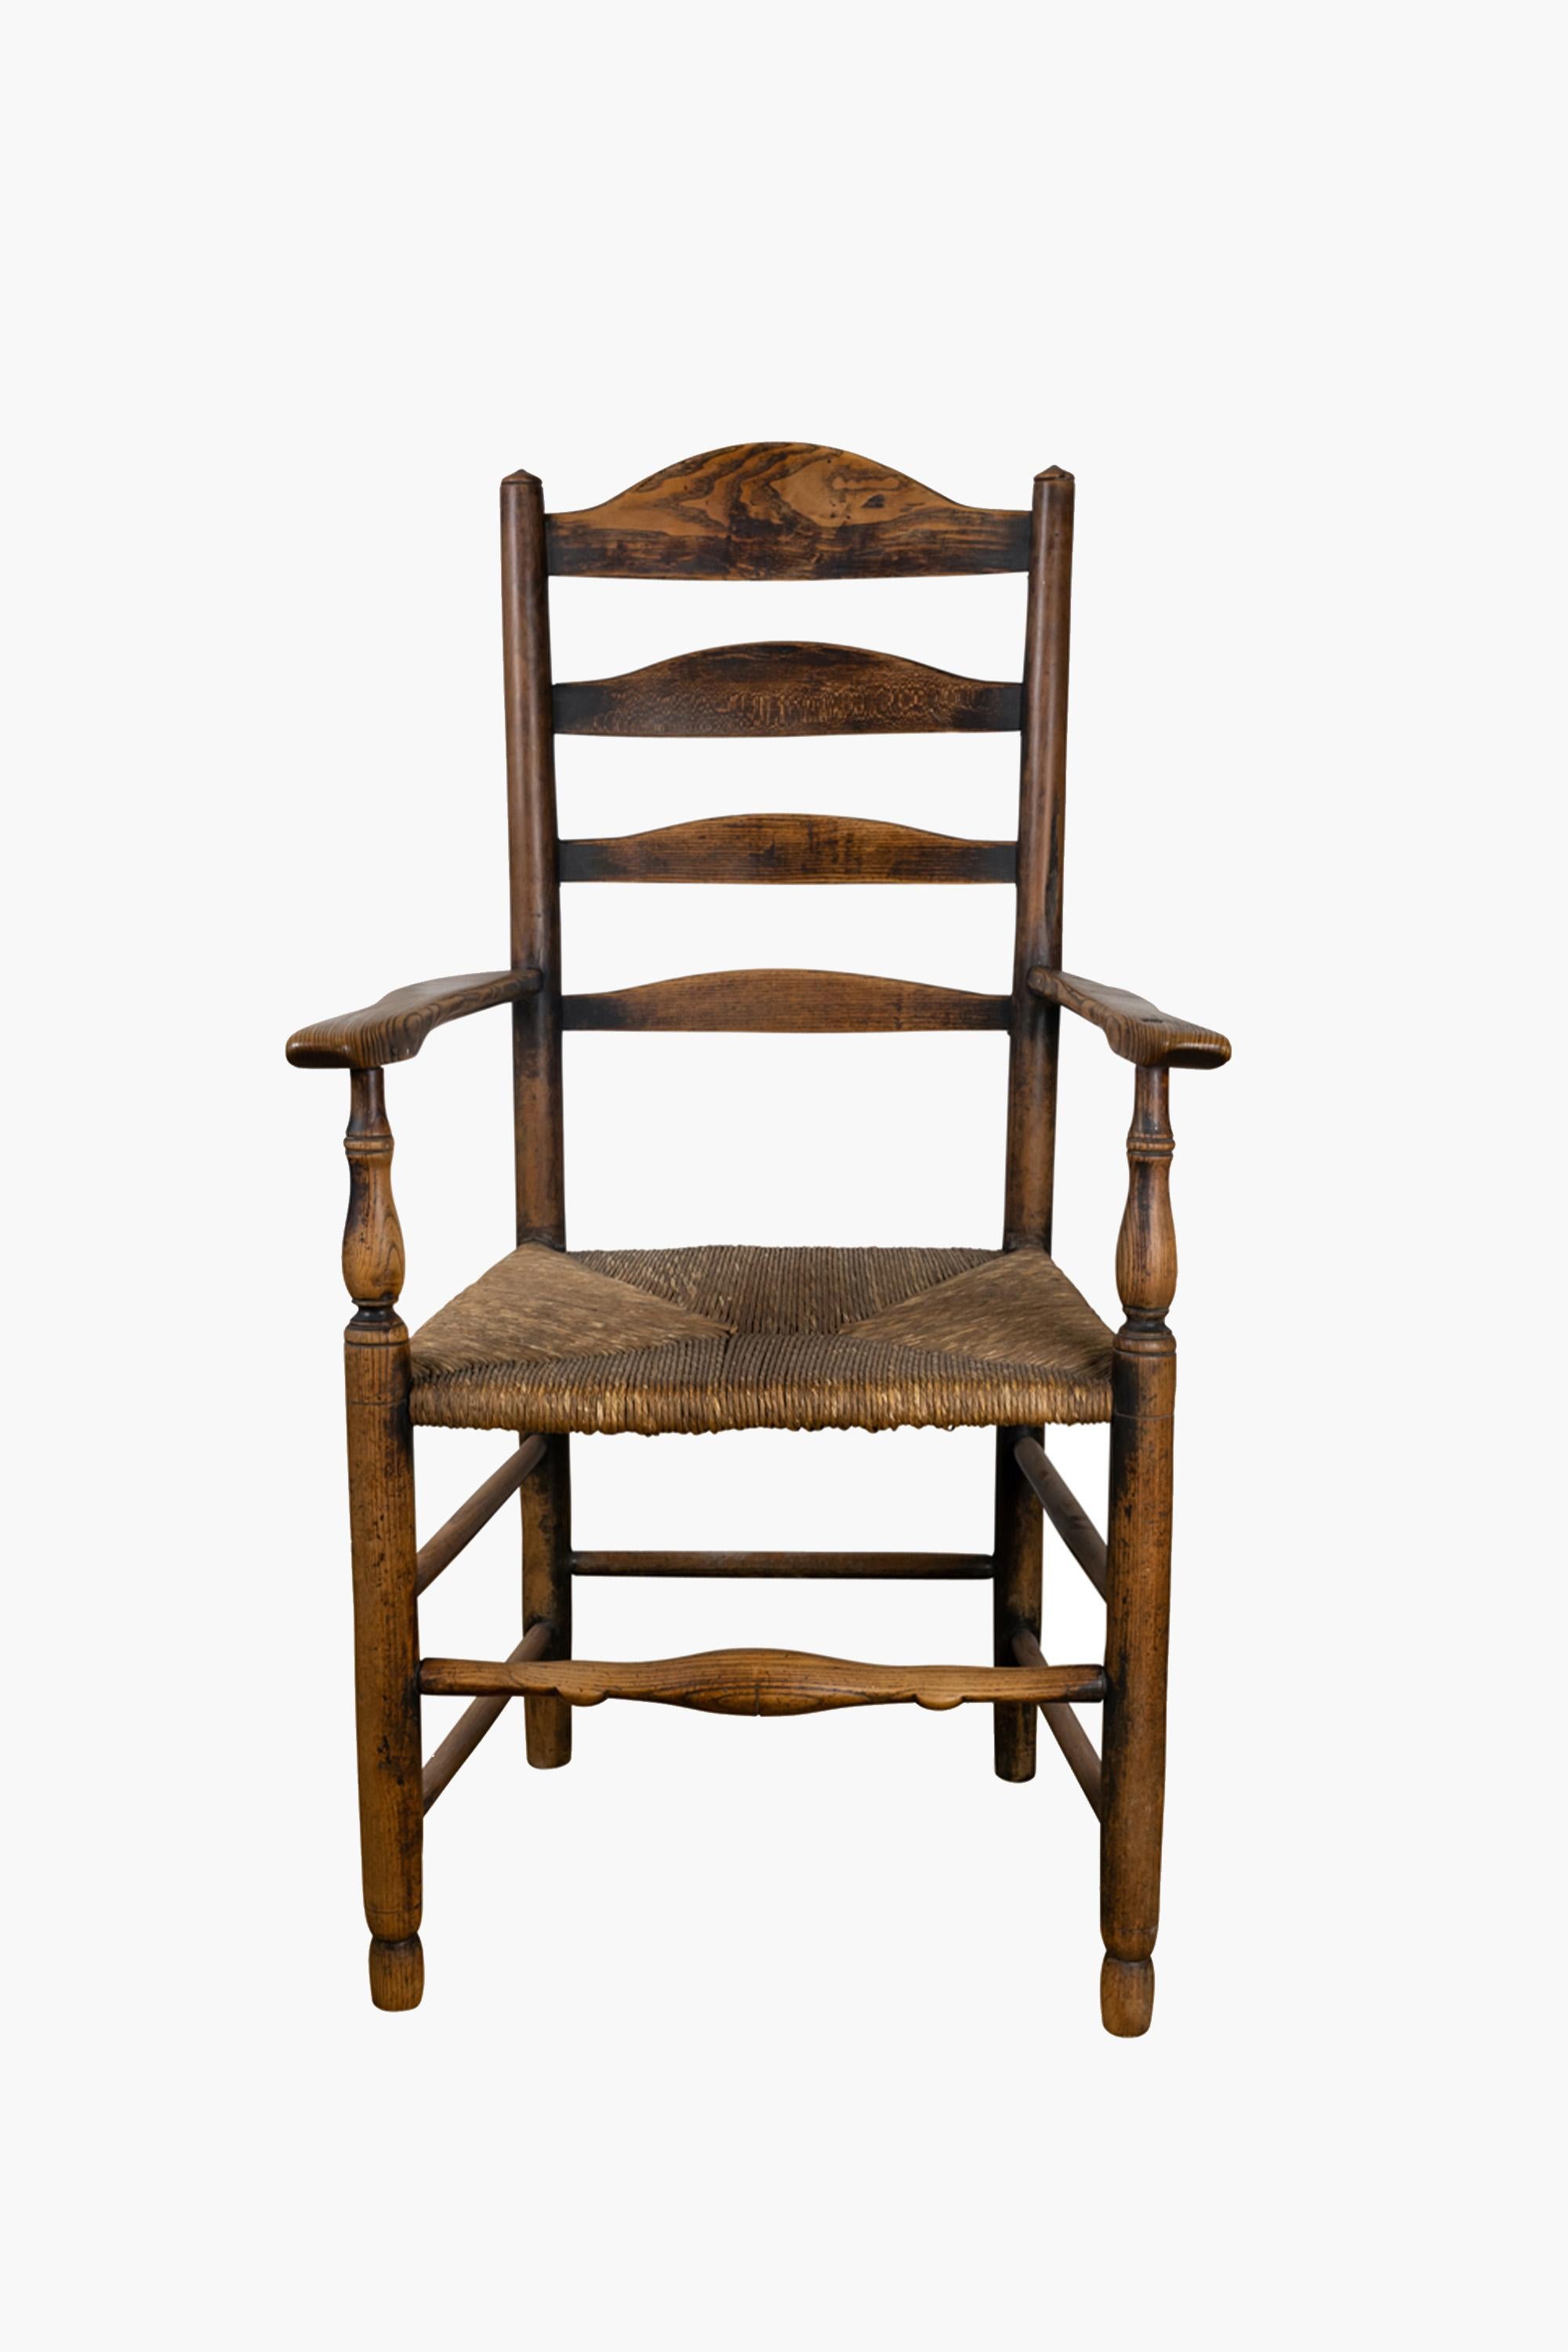 Englischer Sessel mit Leiterrücken, frühes 19. Jahrhundert

Ein Sessel mit Leiterlehne aus dem frühen 19. Jahrhundert. Hergestellt aus Esche mit toller Patina und originalem Binsen-Sitz.

Ein echter handgefertigter Stuhl, der mit dem Alter eine